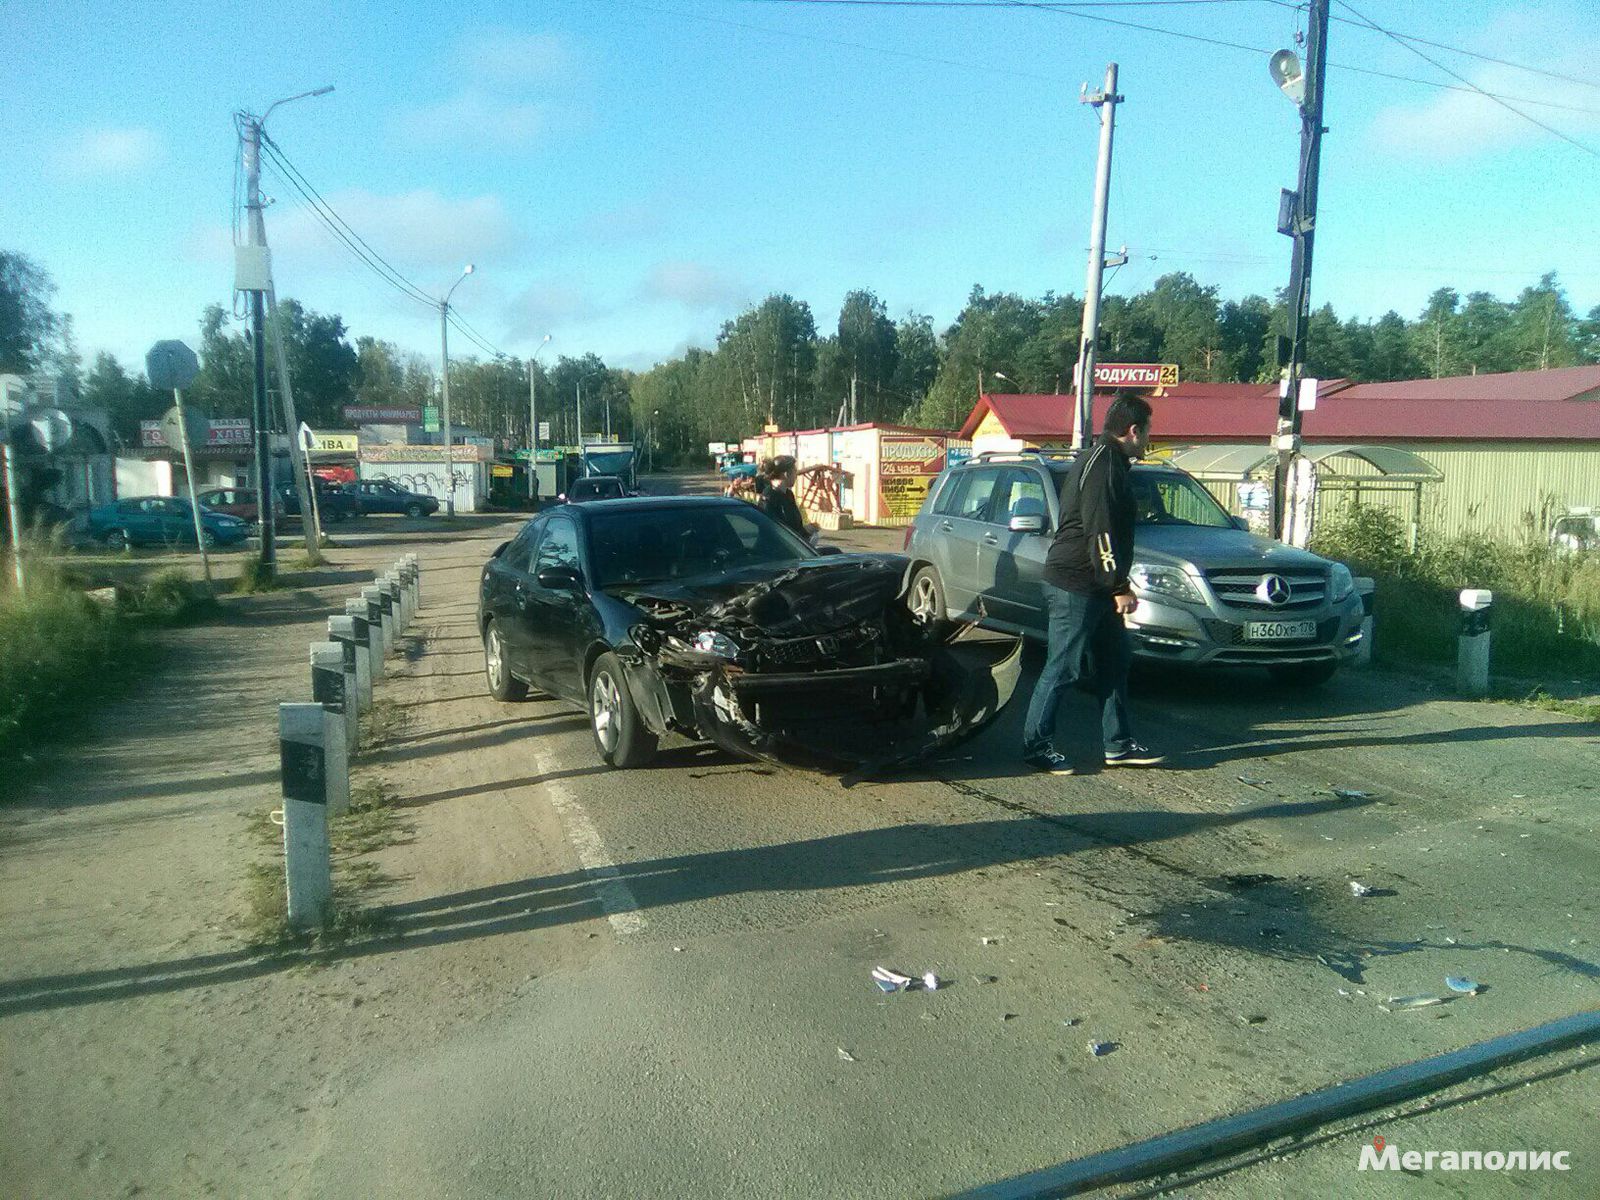 Видео: Электричка снесла половину автомобиля на переезде в Ленобласти